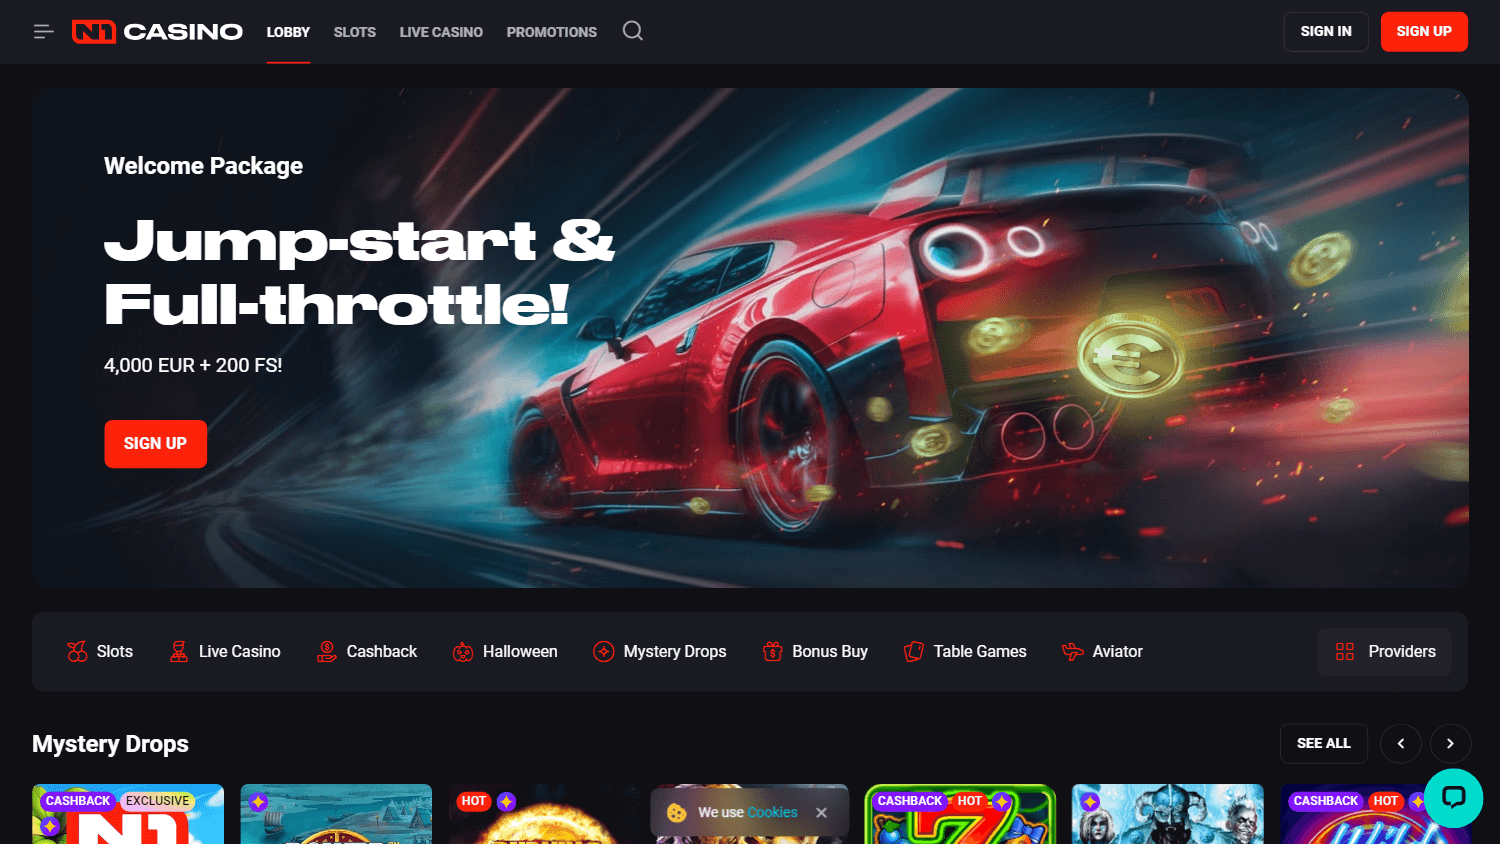 n1_casino_homepage_desktop